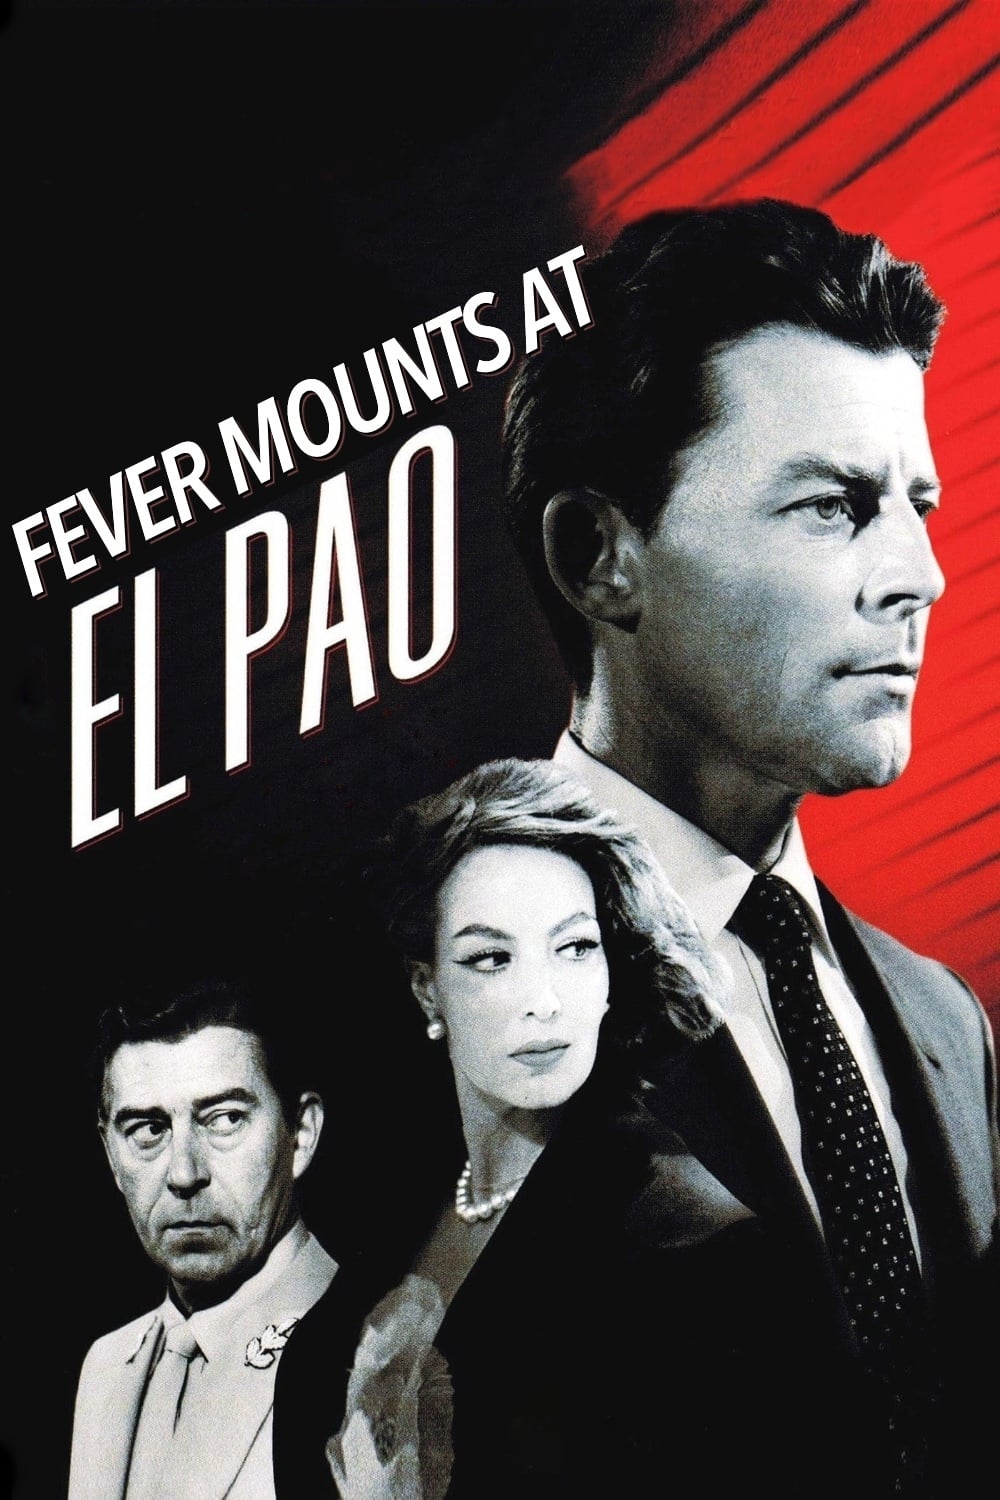 Fever Mounts at El Pao (1959)